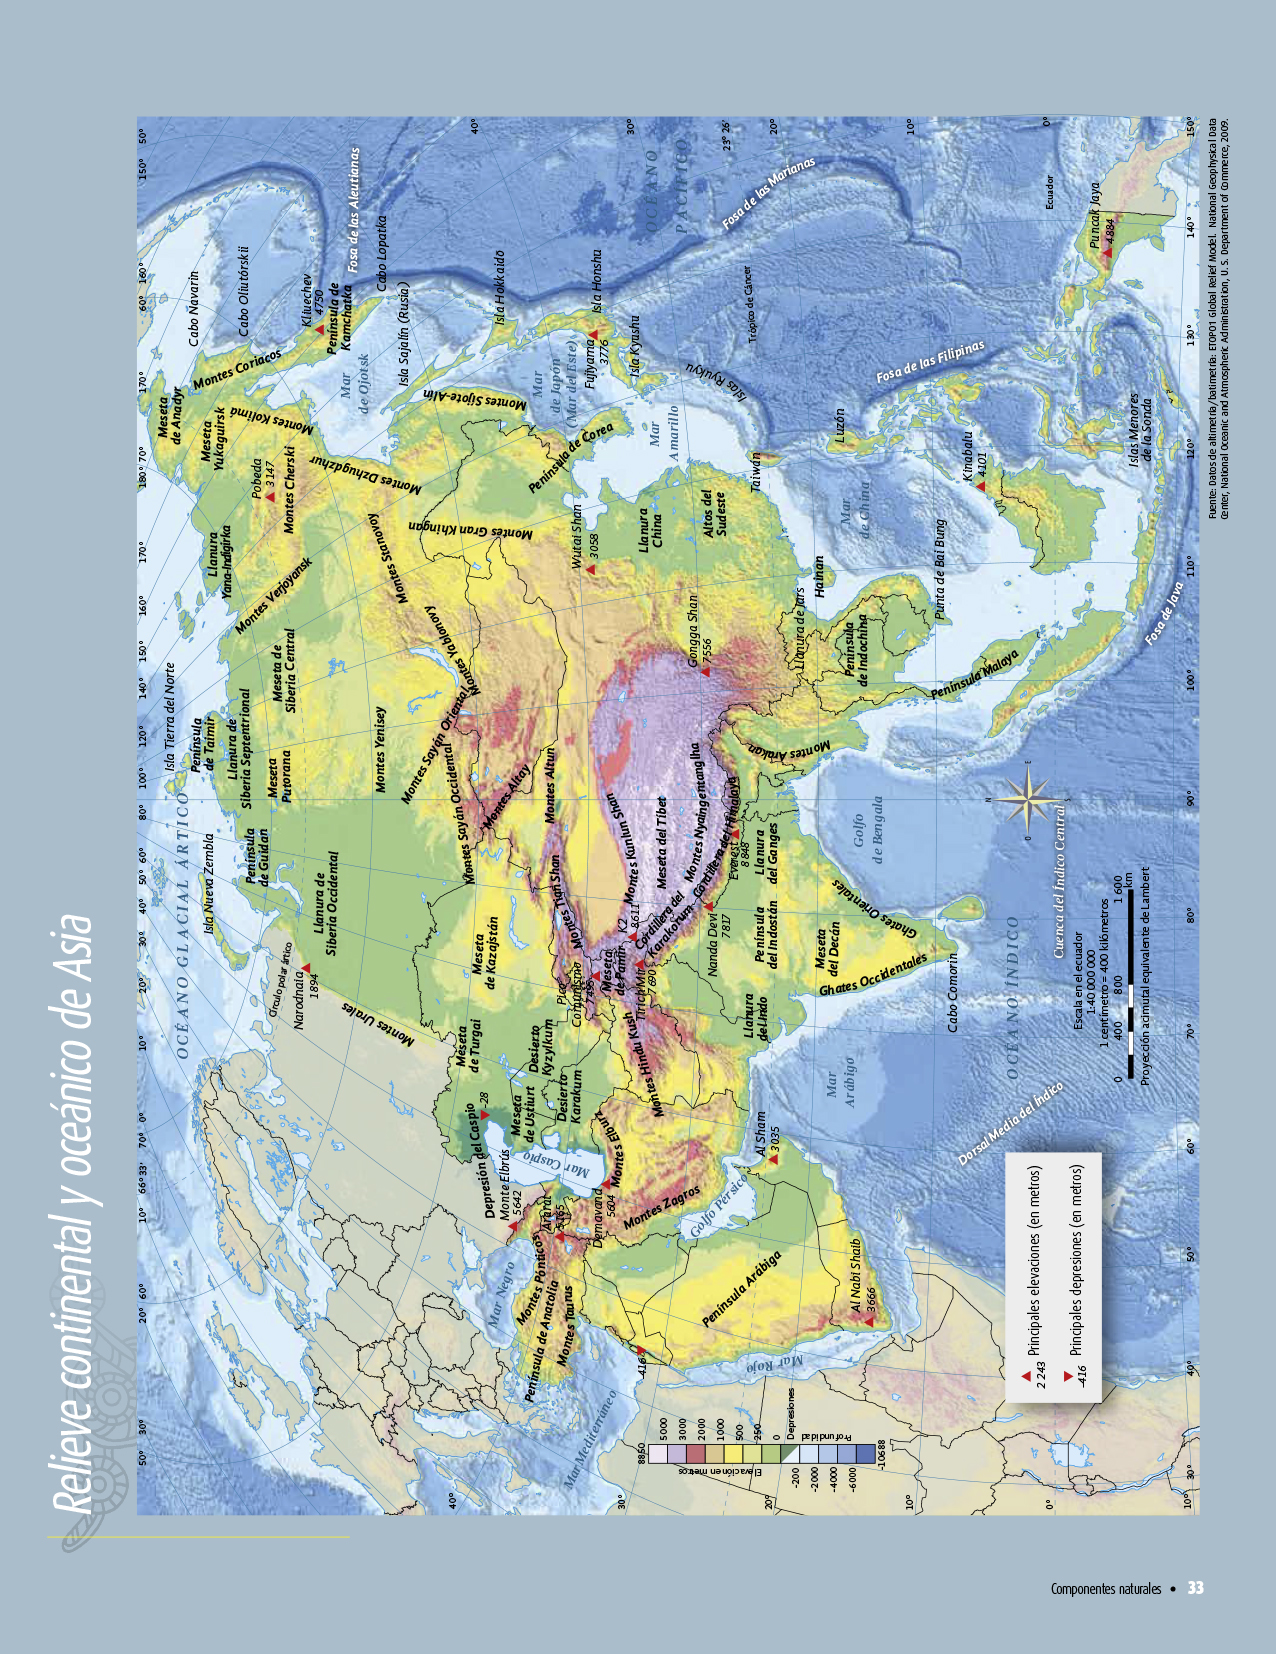 Atlas de geografía del mundo quinto grado 2017-2018 - Página 33 de 122